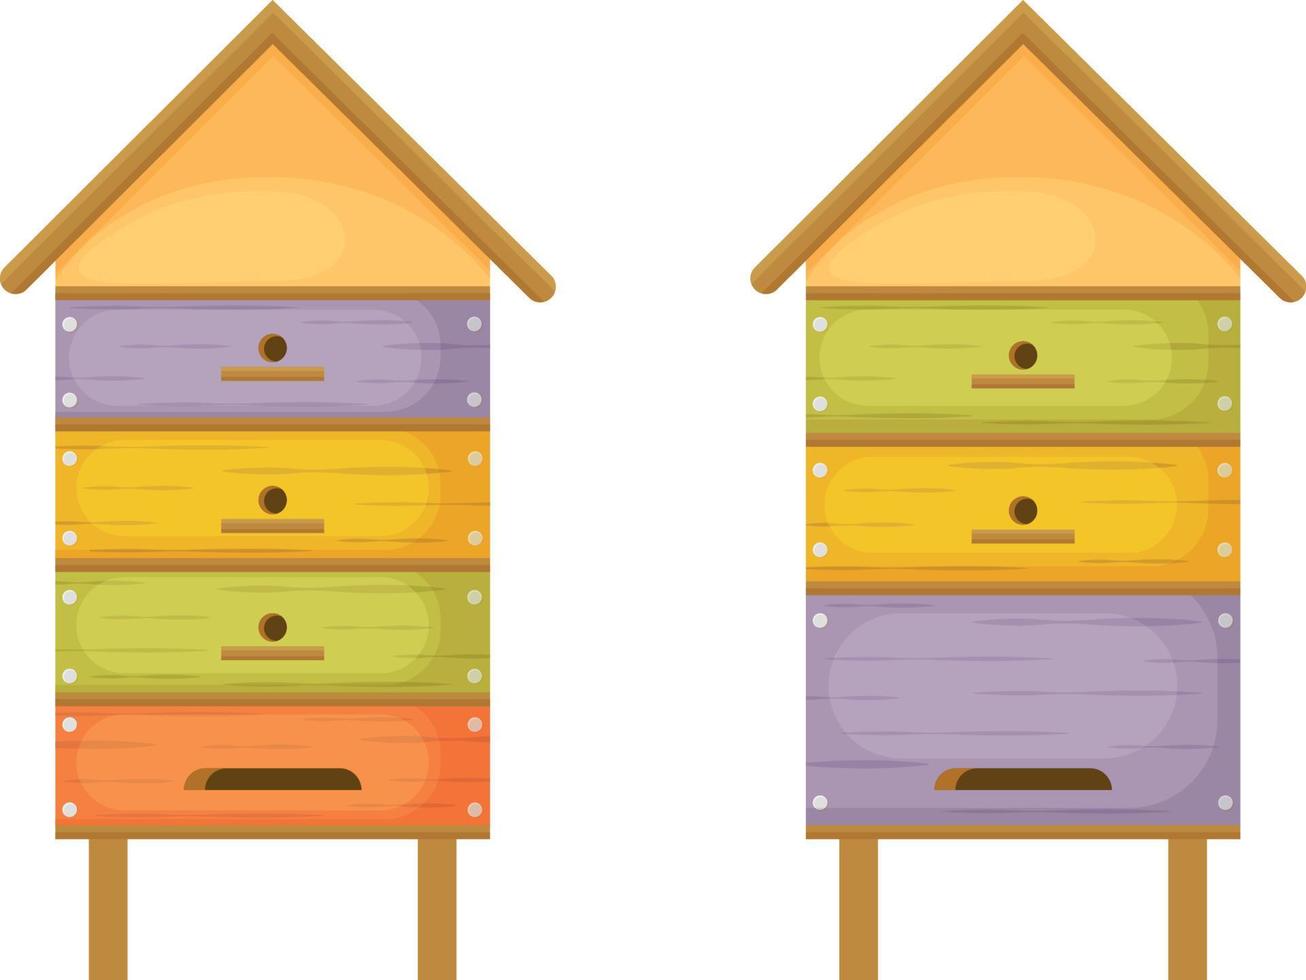 Bienenstock. Biene Nesselsucht. zwei hölzern Bienenstöcke im das bilden von Häuser. bunt Bienenstöcke im Karikatur Stil. Honigbiene Häuser. Vektor Illustration isoliert auf ein Weiß Hintergrund